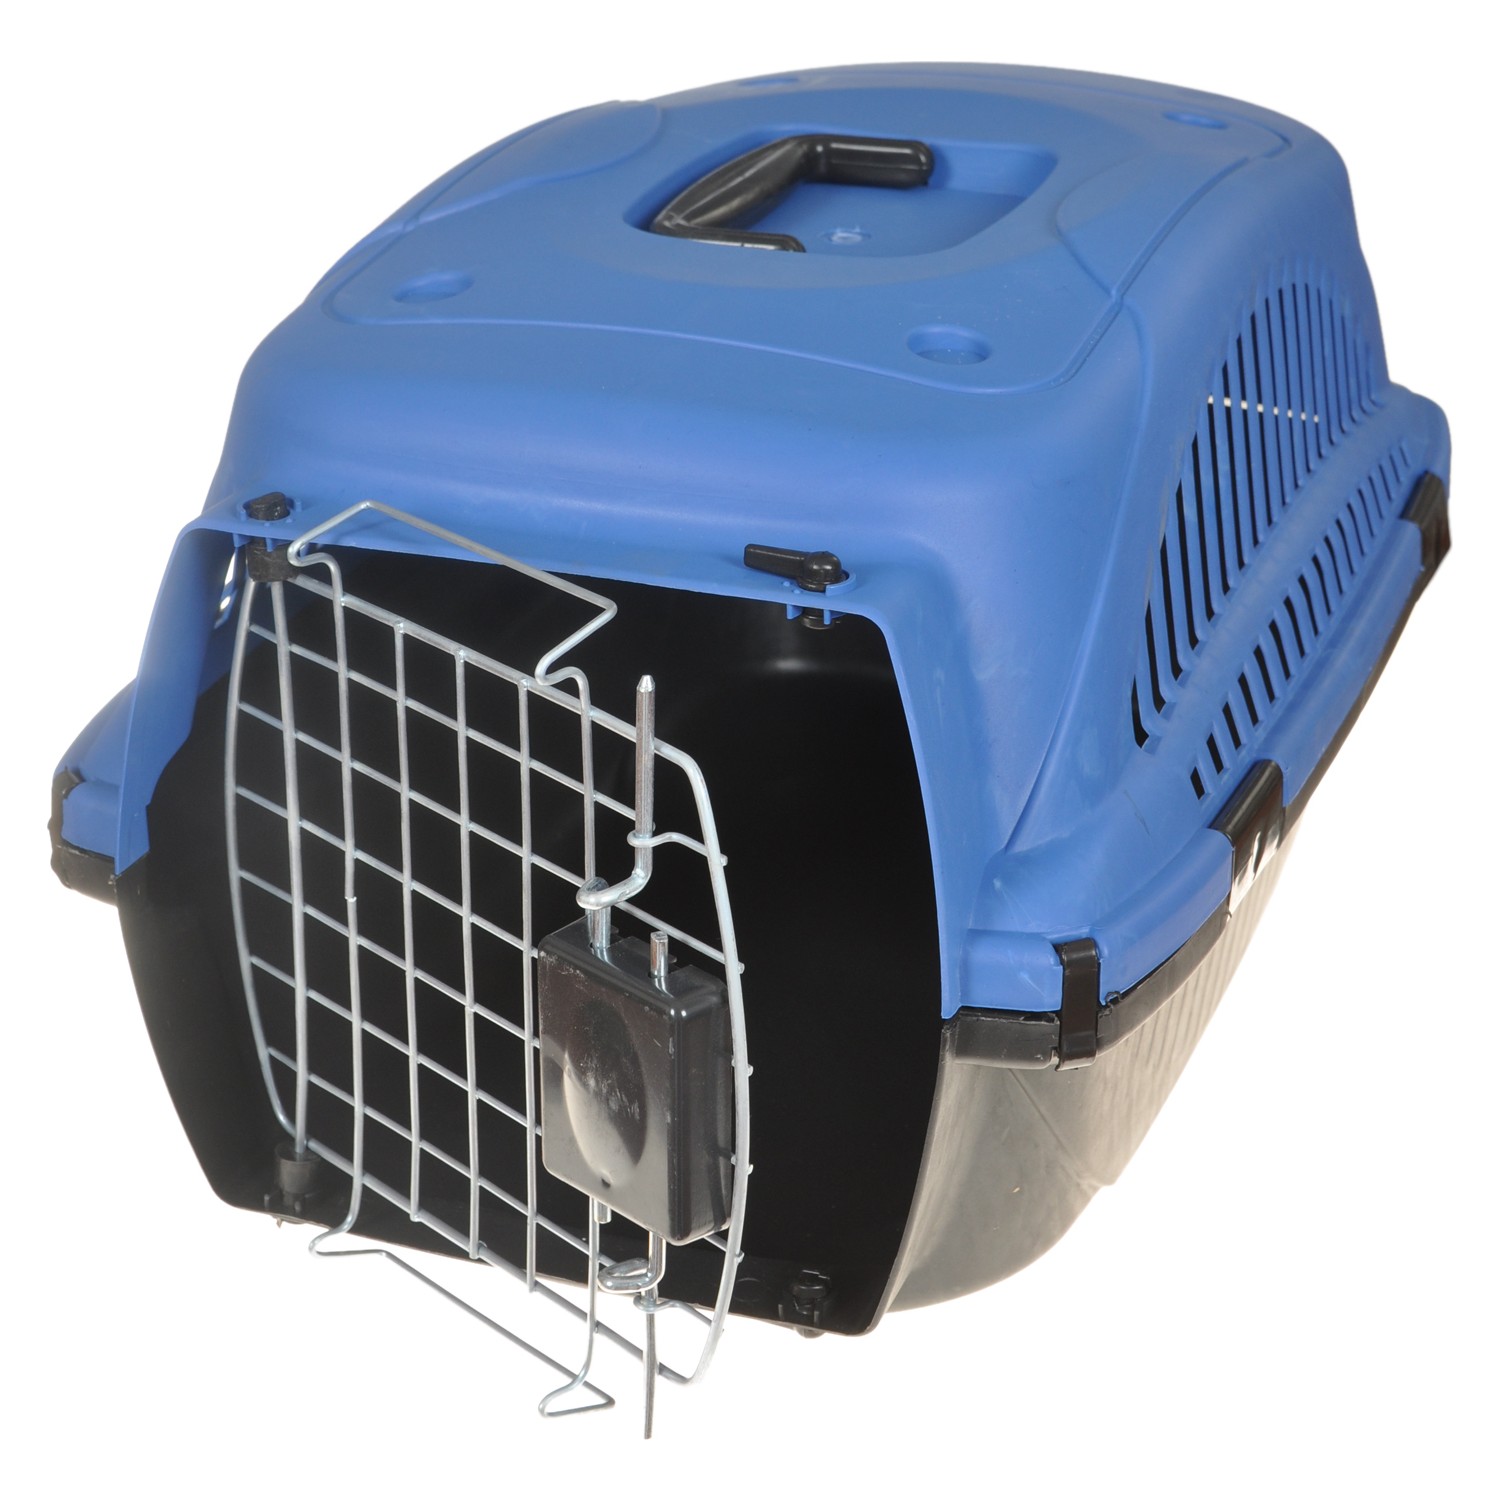 Yopigo Kedi Köpek Taşıma Kafesi Tel Kapılı Mavi Fiyatı